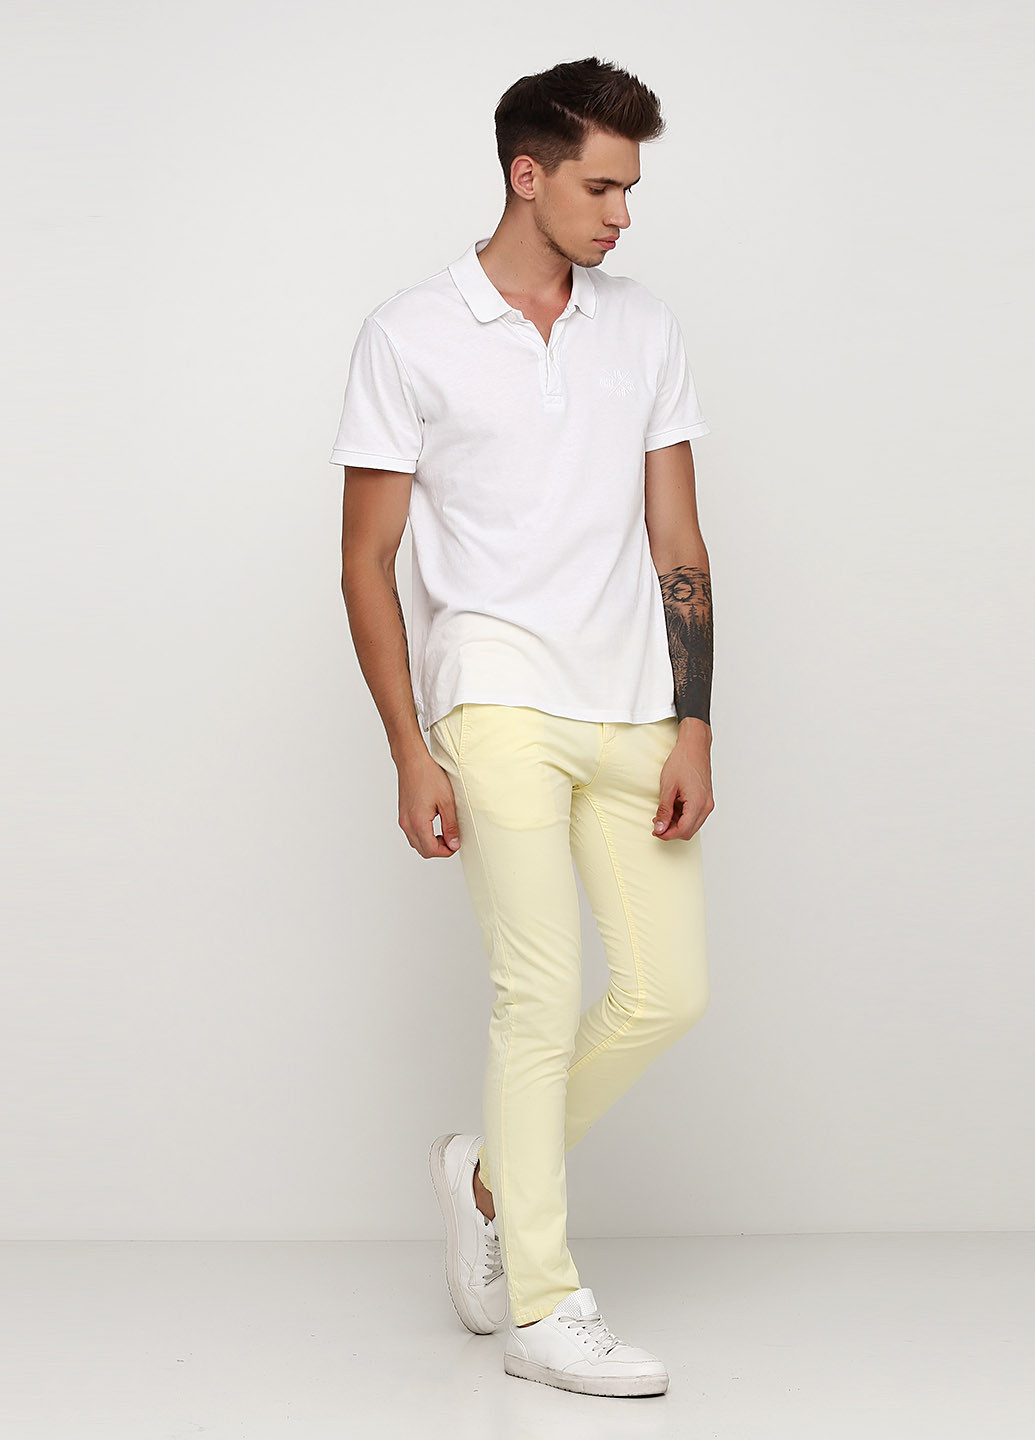 Светло-желтые кэжуал летние чиносы брюки Zara